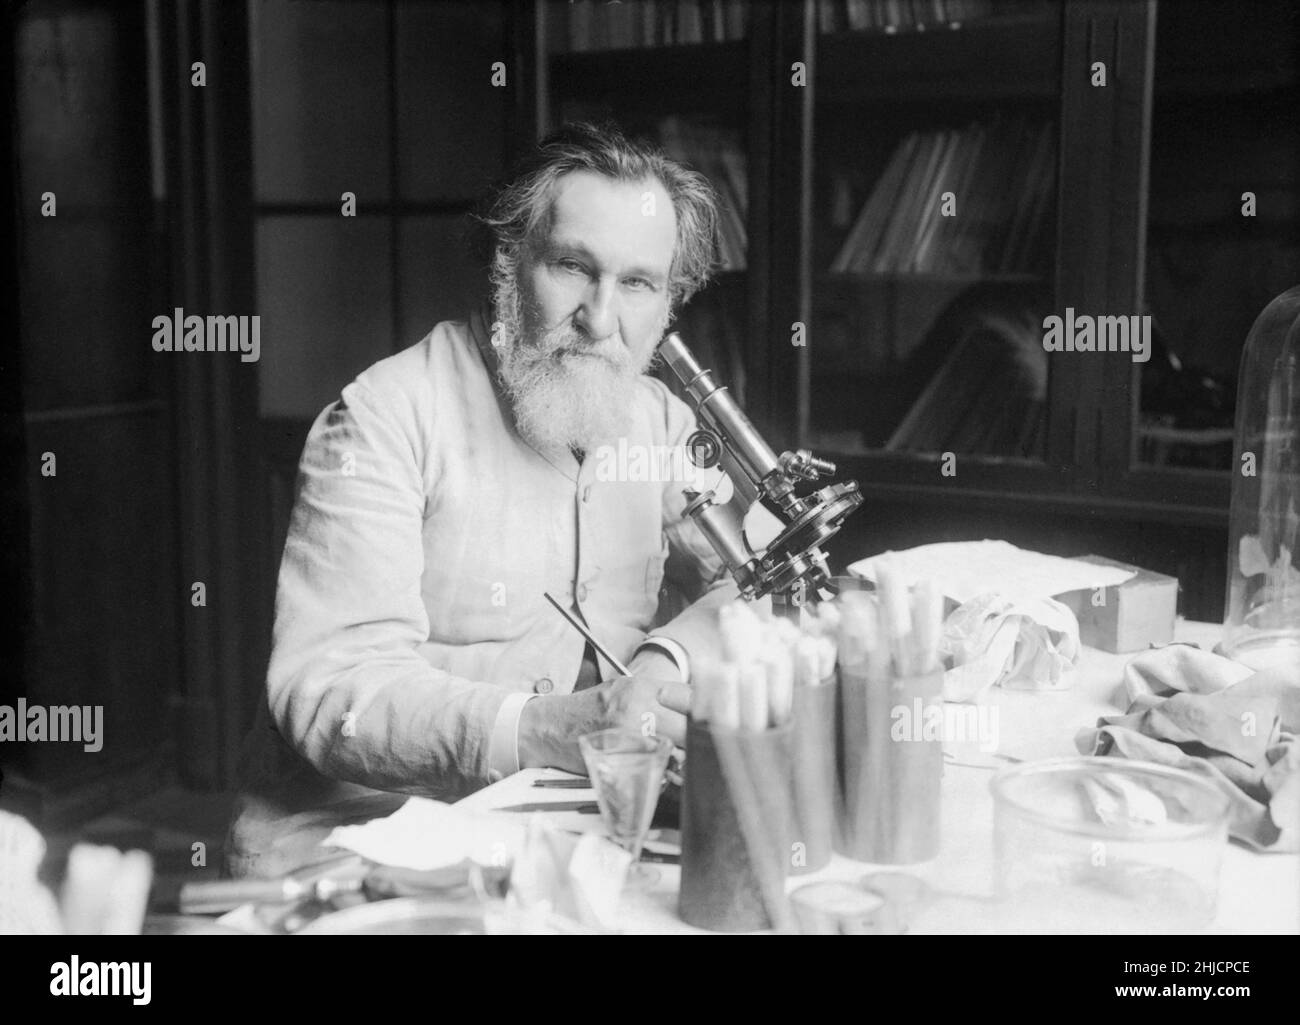 Ilya Iljitsch Mechnikov, auch bekannt als √âlie Metchnikoff (1845 -1916), russischer Zoologe, bekannt für seine bahnbrechenden Forschungen in der Immunologie. Er und Paul ehrlich wurden 1908 gemeinsam mit dem Nobelpreis für Physiologie oder Medizin ausgezeichnet. Er entdeckte 1882 einen Immunitätsprozess, der Phagozytose genannt wird, und die dafür verantwortliche Zelle, eine Phagozyte genannt, speziell die Makrophagen. Fotografiert in seinem Labor, 1913. Stockfoto